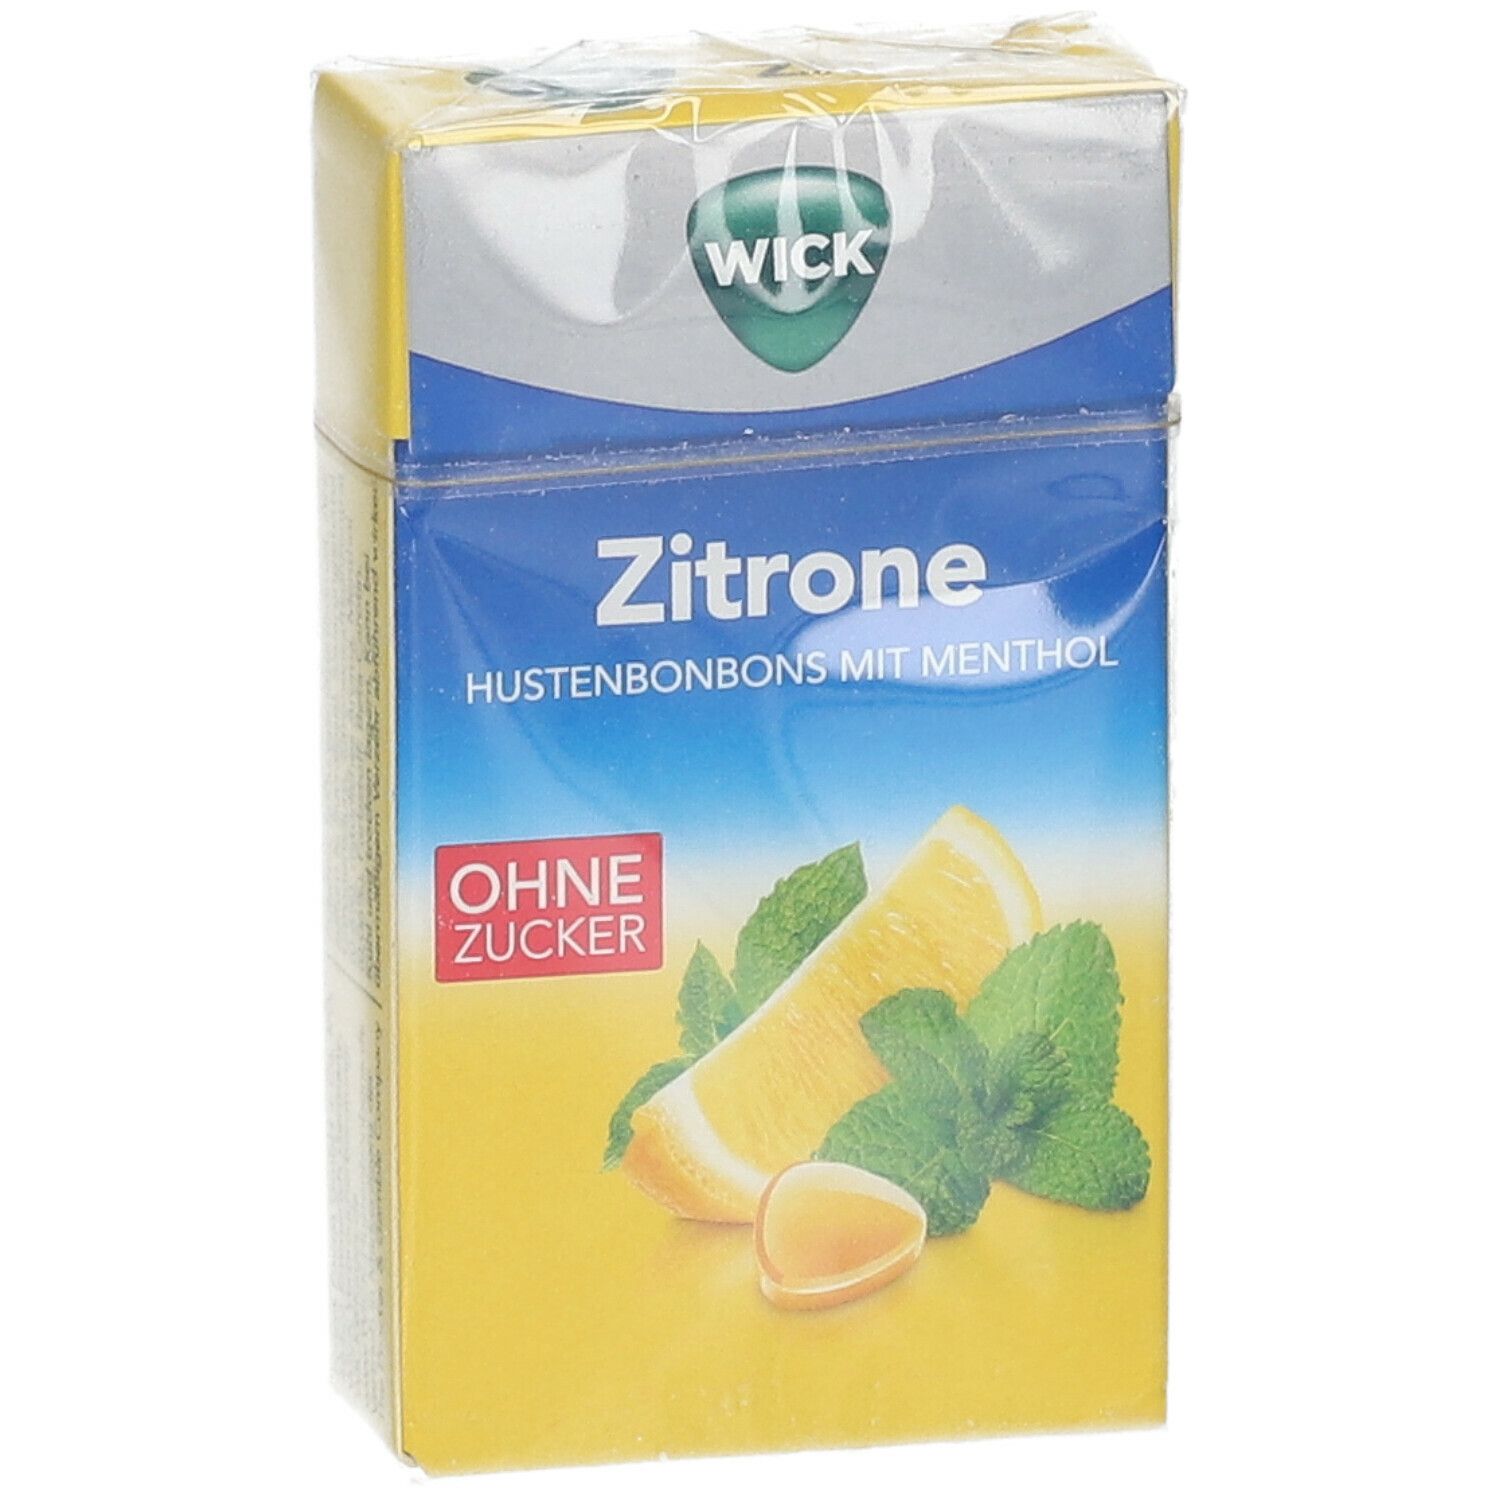 WICK Zitrone & natürliches Menthol ohne Zucker